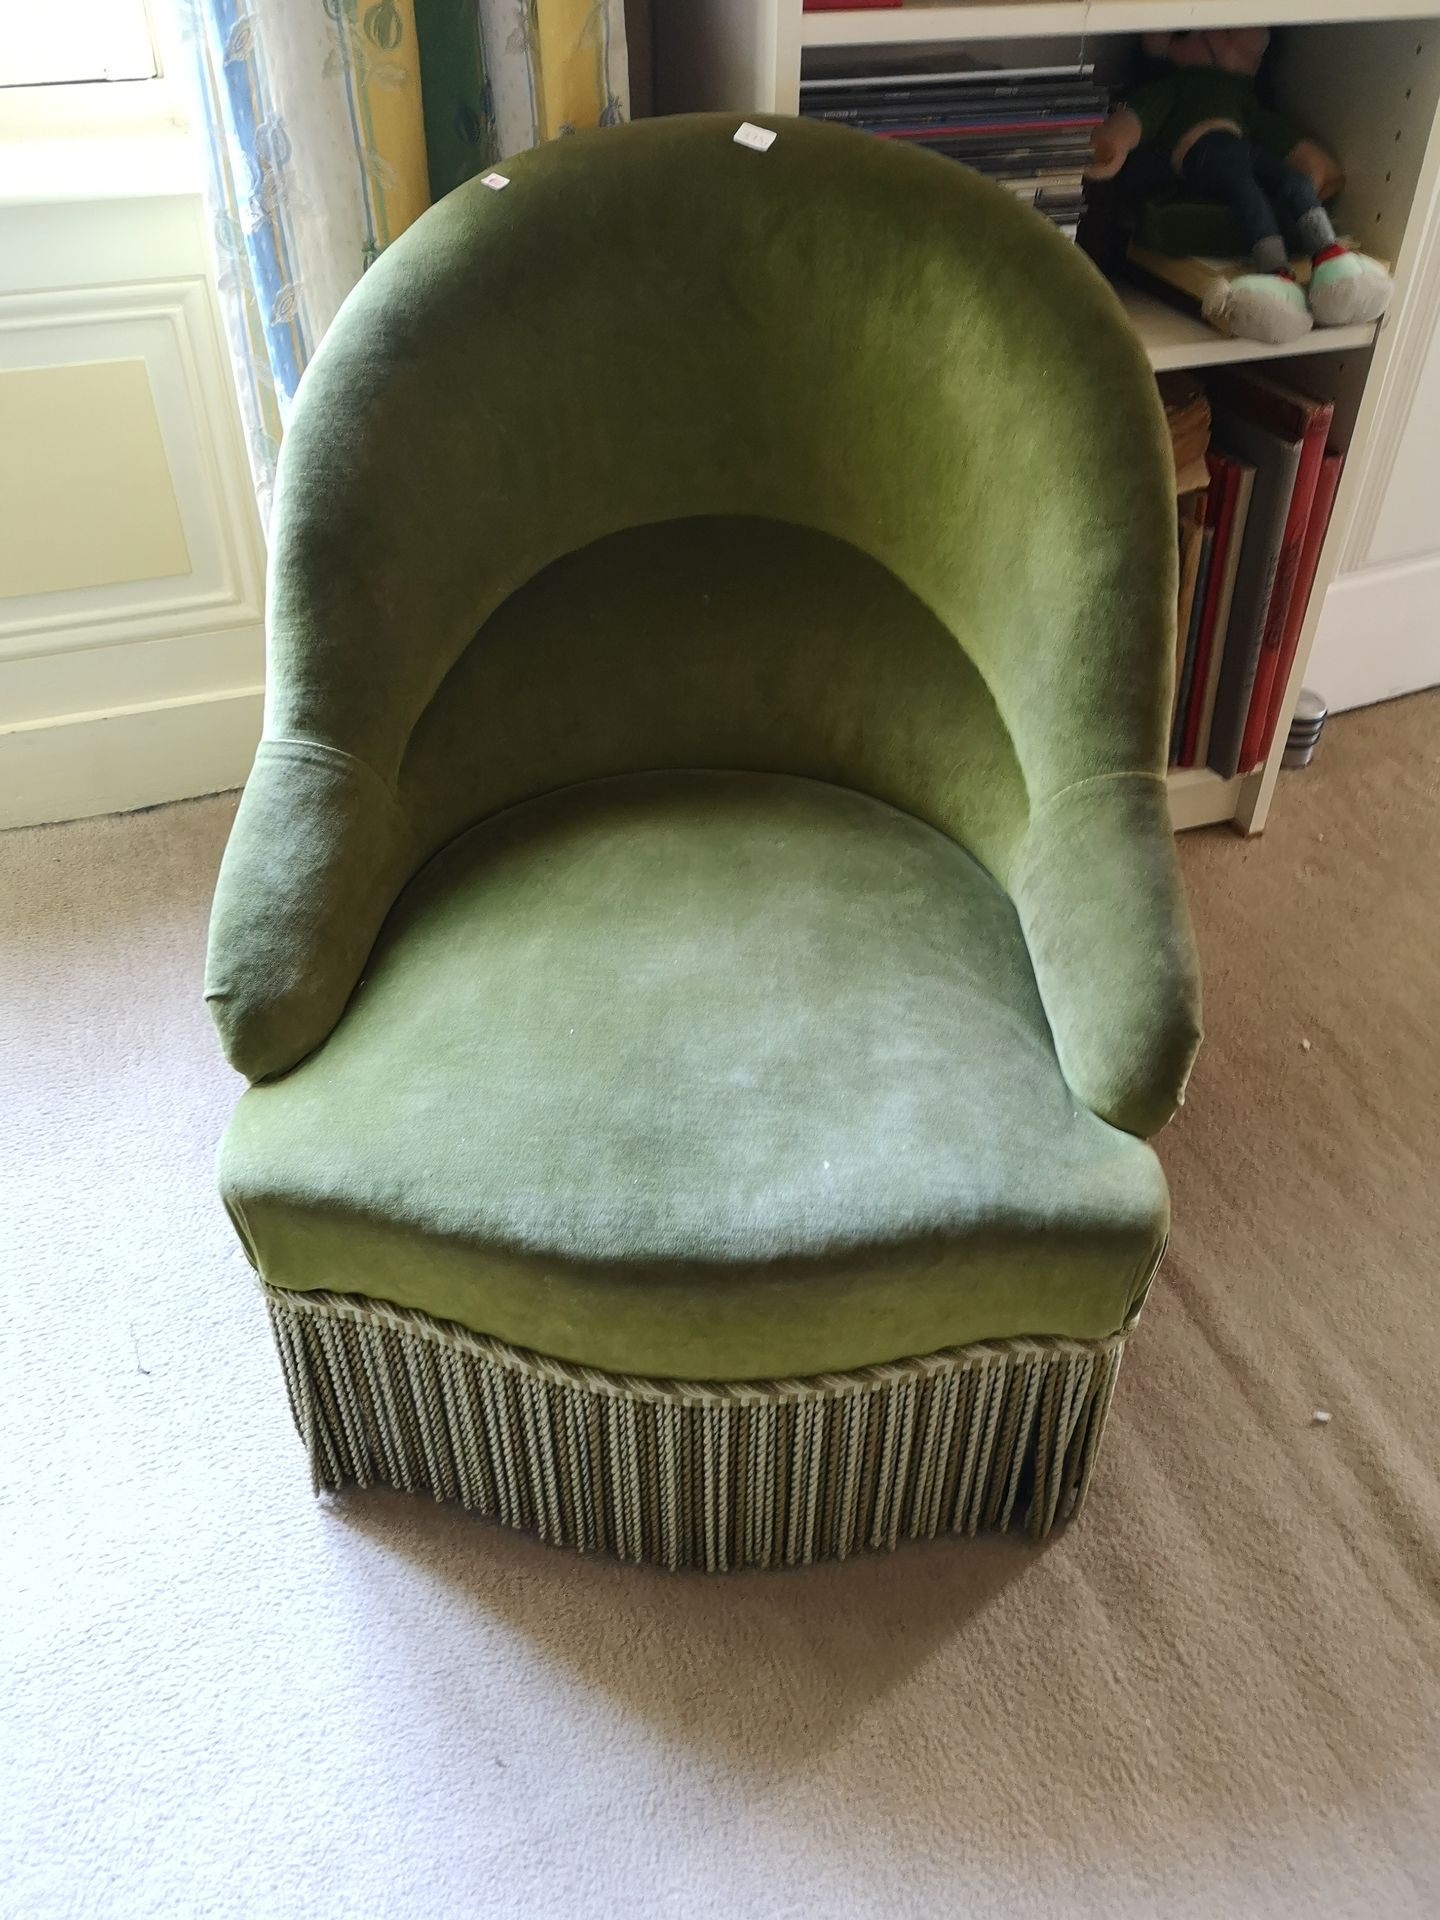 Null 拍品包括：小型蓝色织物软垫扶手椅（高度：63厘米），小型翻板桌（高度：67厘米，不牢固），绿色织物软垫扶手椅（高度：74厘米），带镂空椅背的黑化木椅（&hellip;